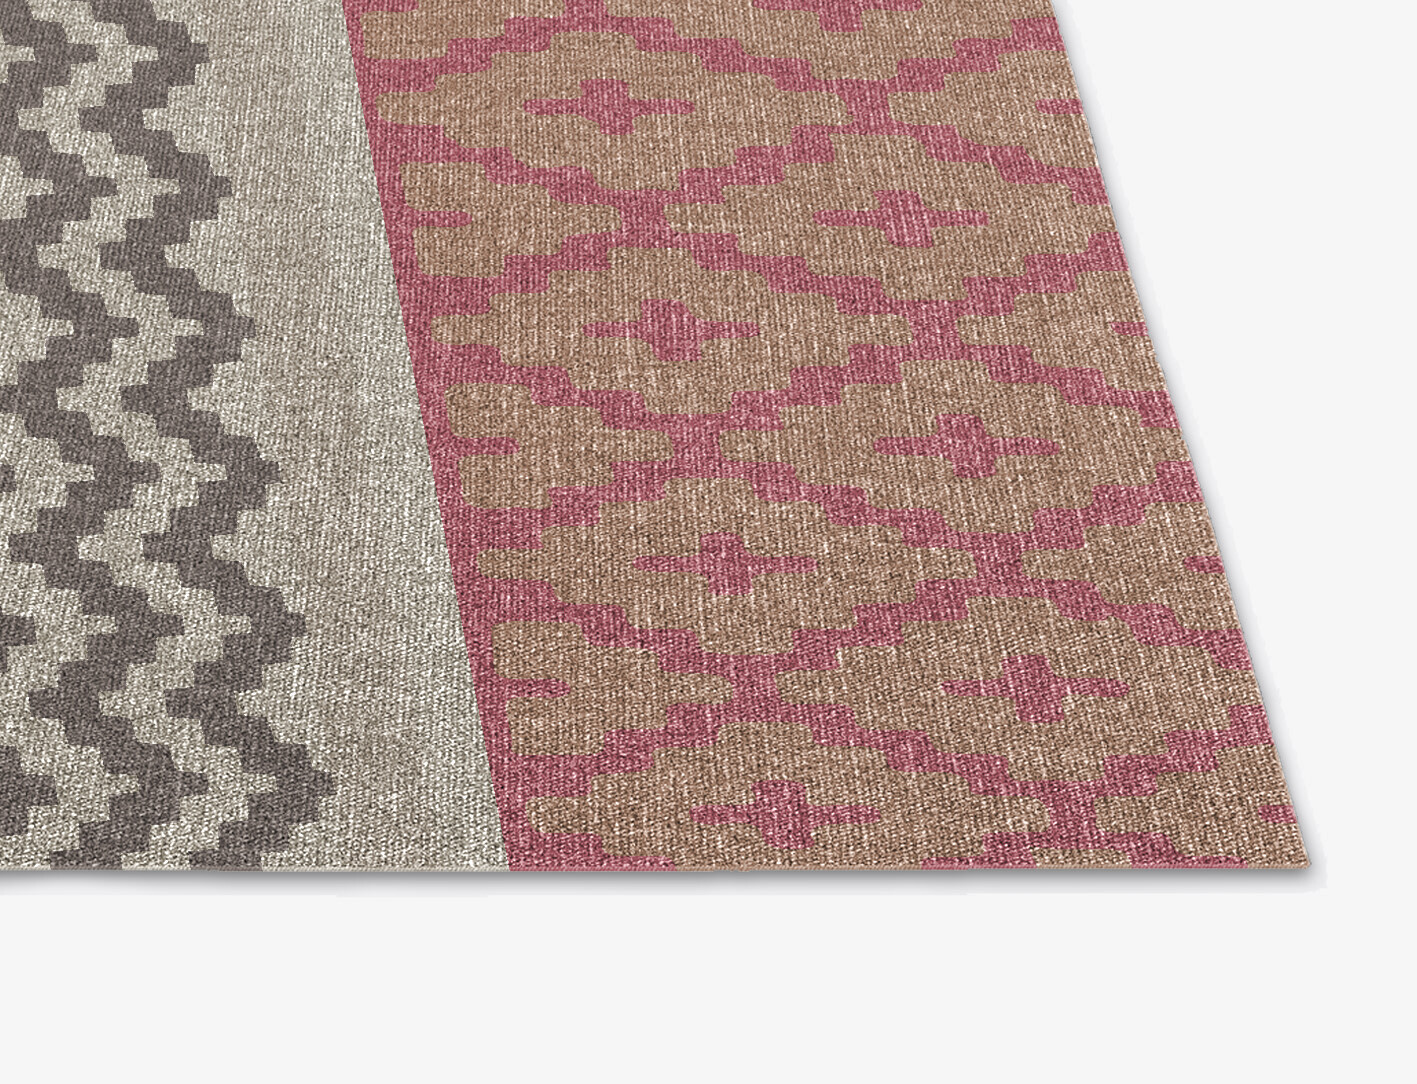 Pink Star Flatweaves Square Flatweave New Zealand Wool Custom Rug by Rug Artisan